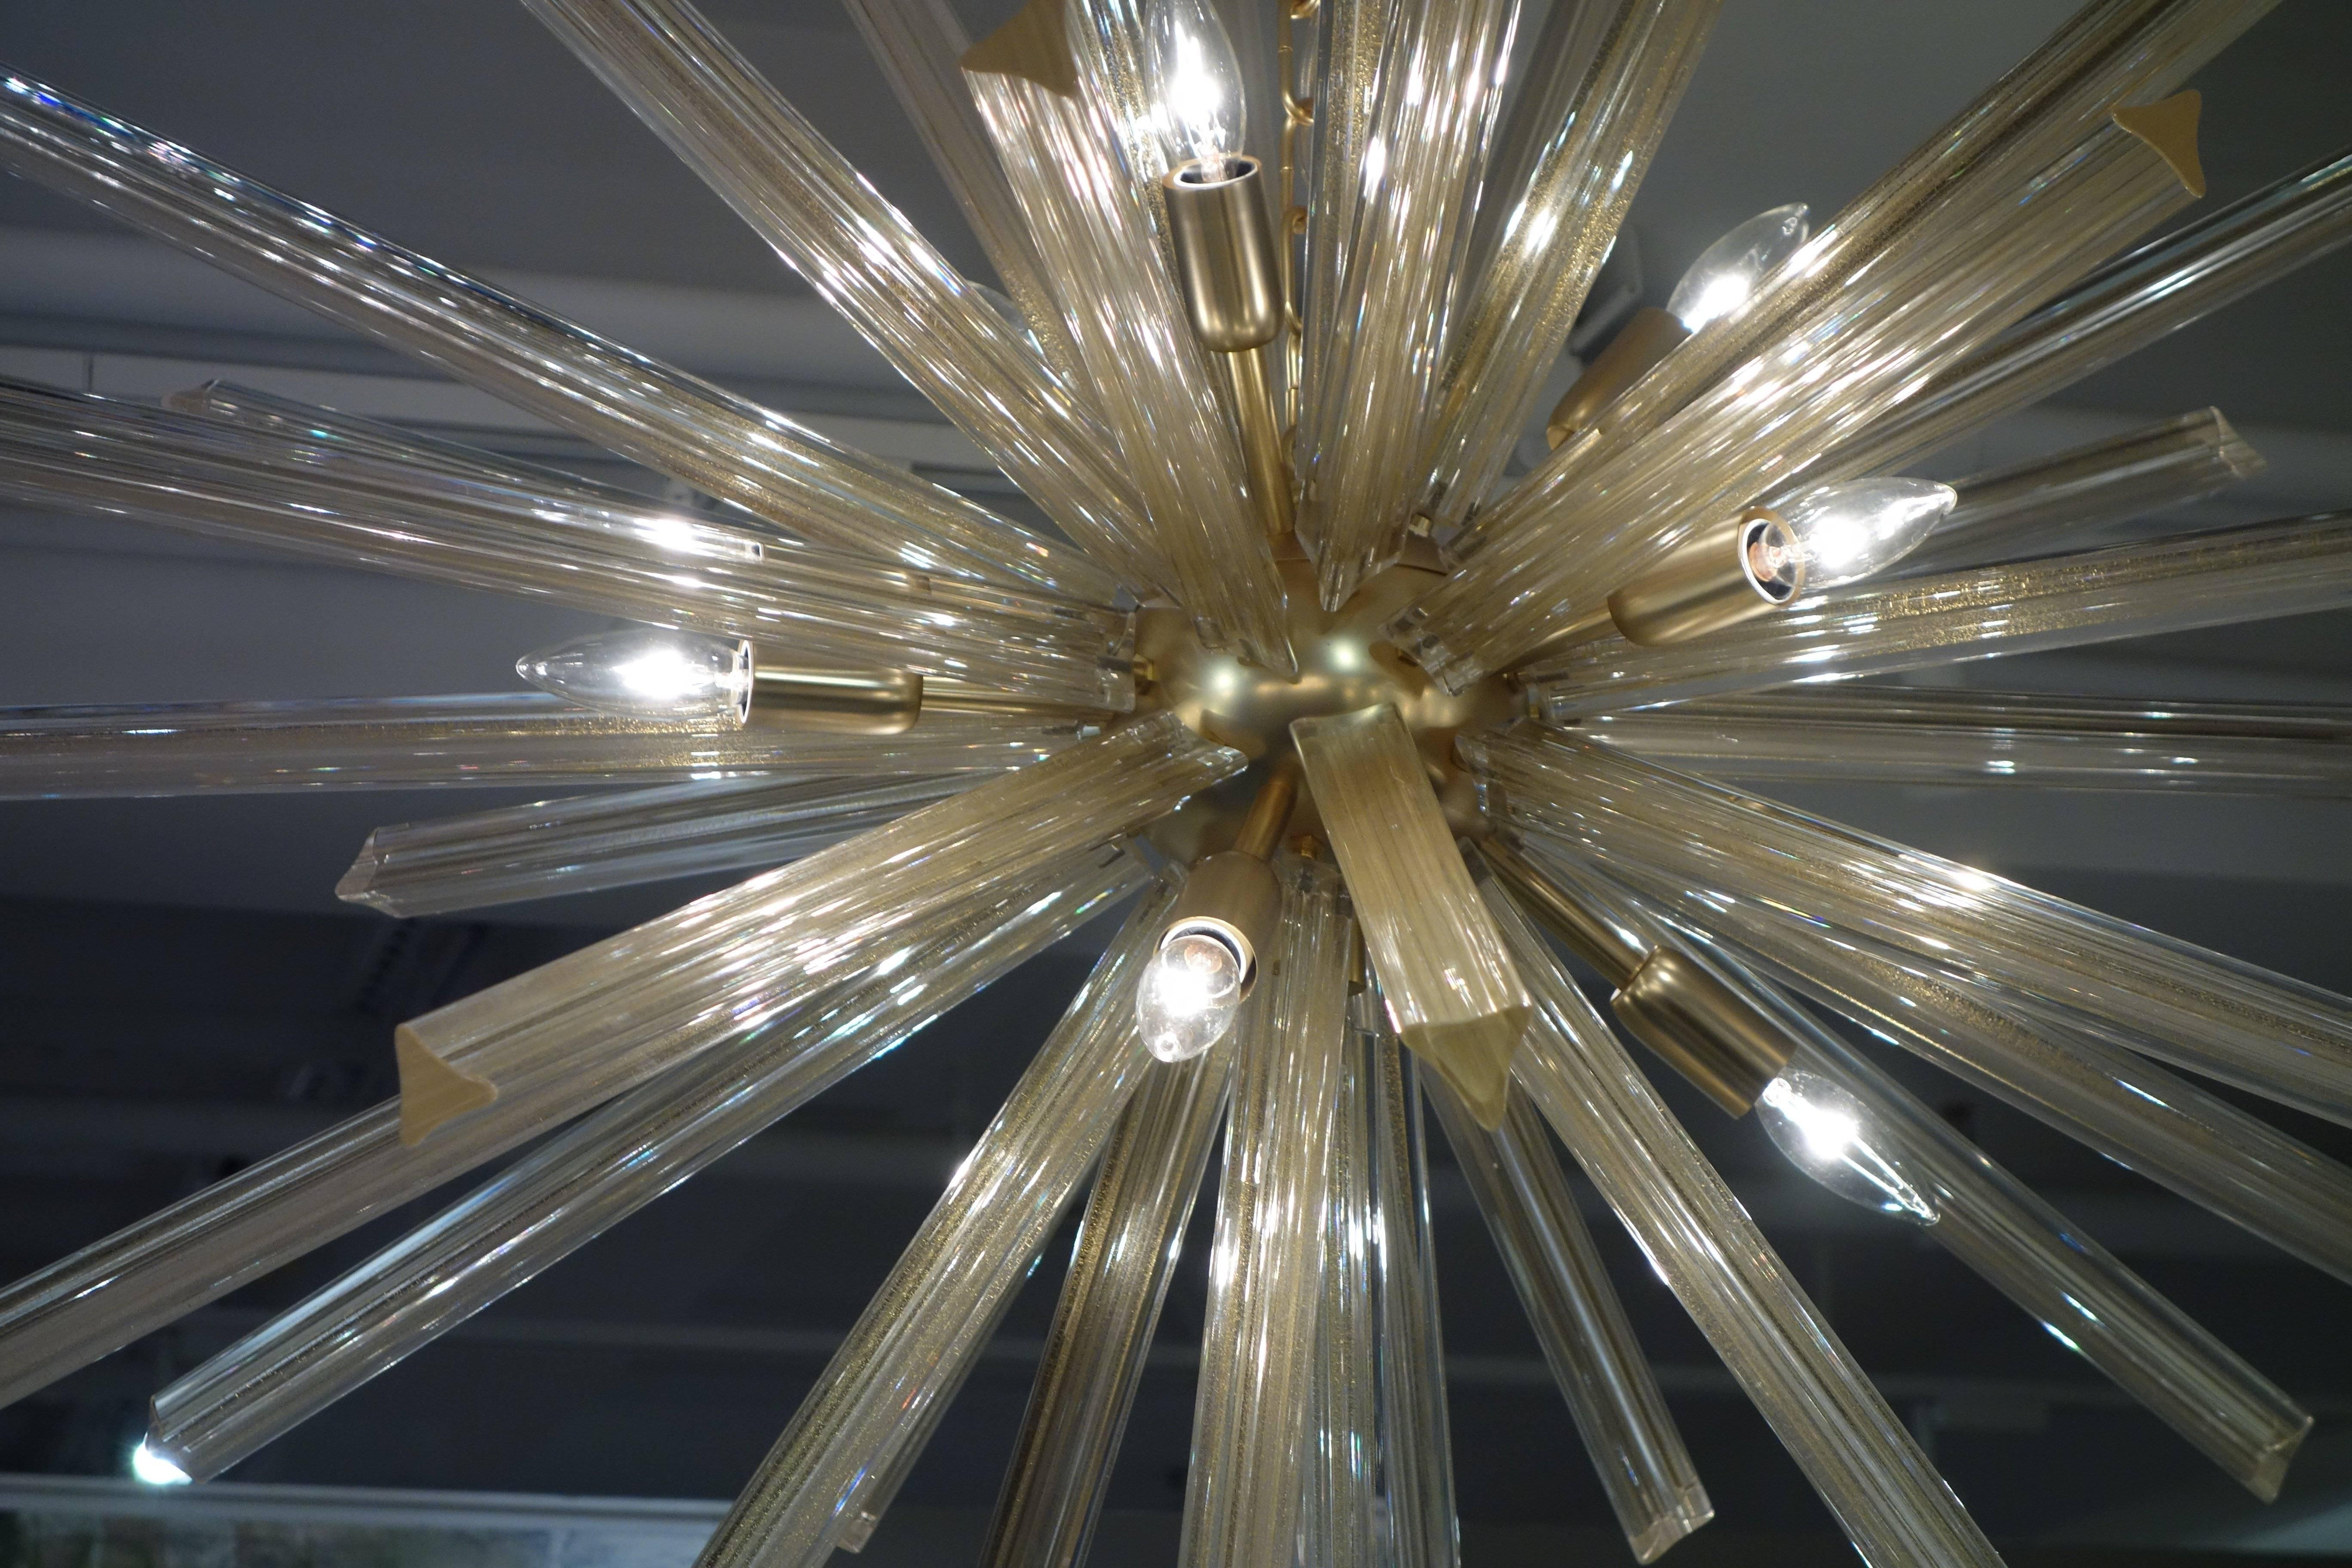 gold sputnik chandelier